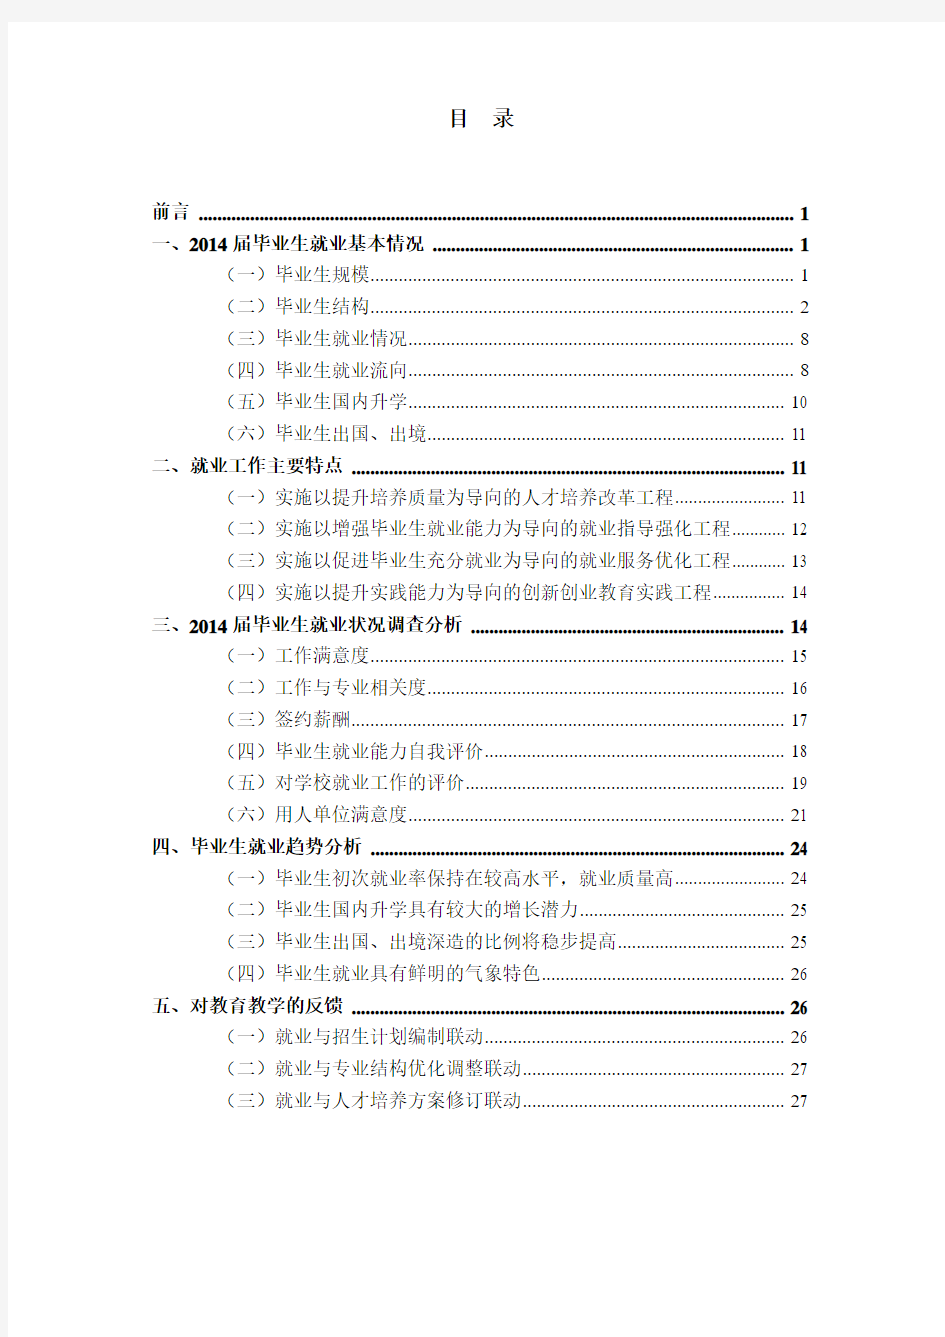 南京信息工程大学2014年毕业生就业质量年度报告